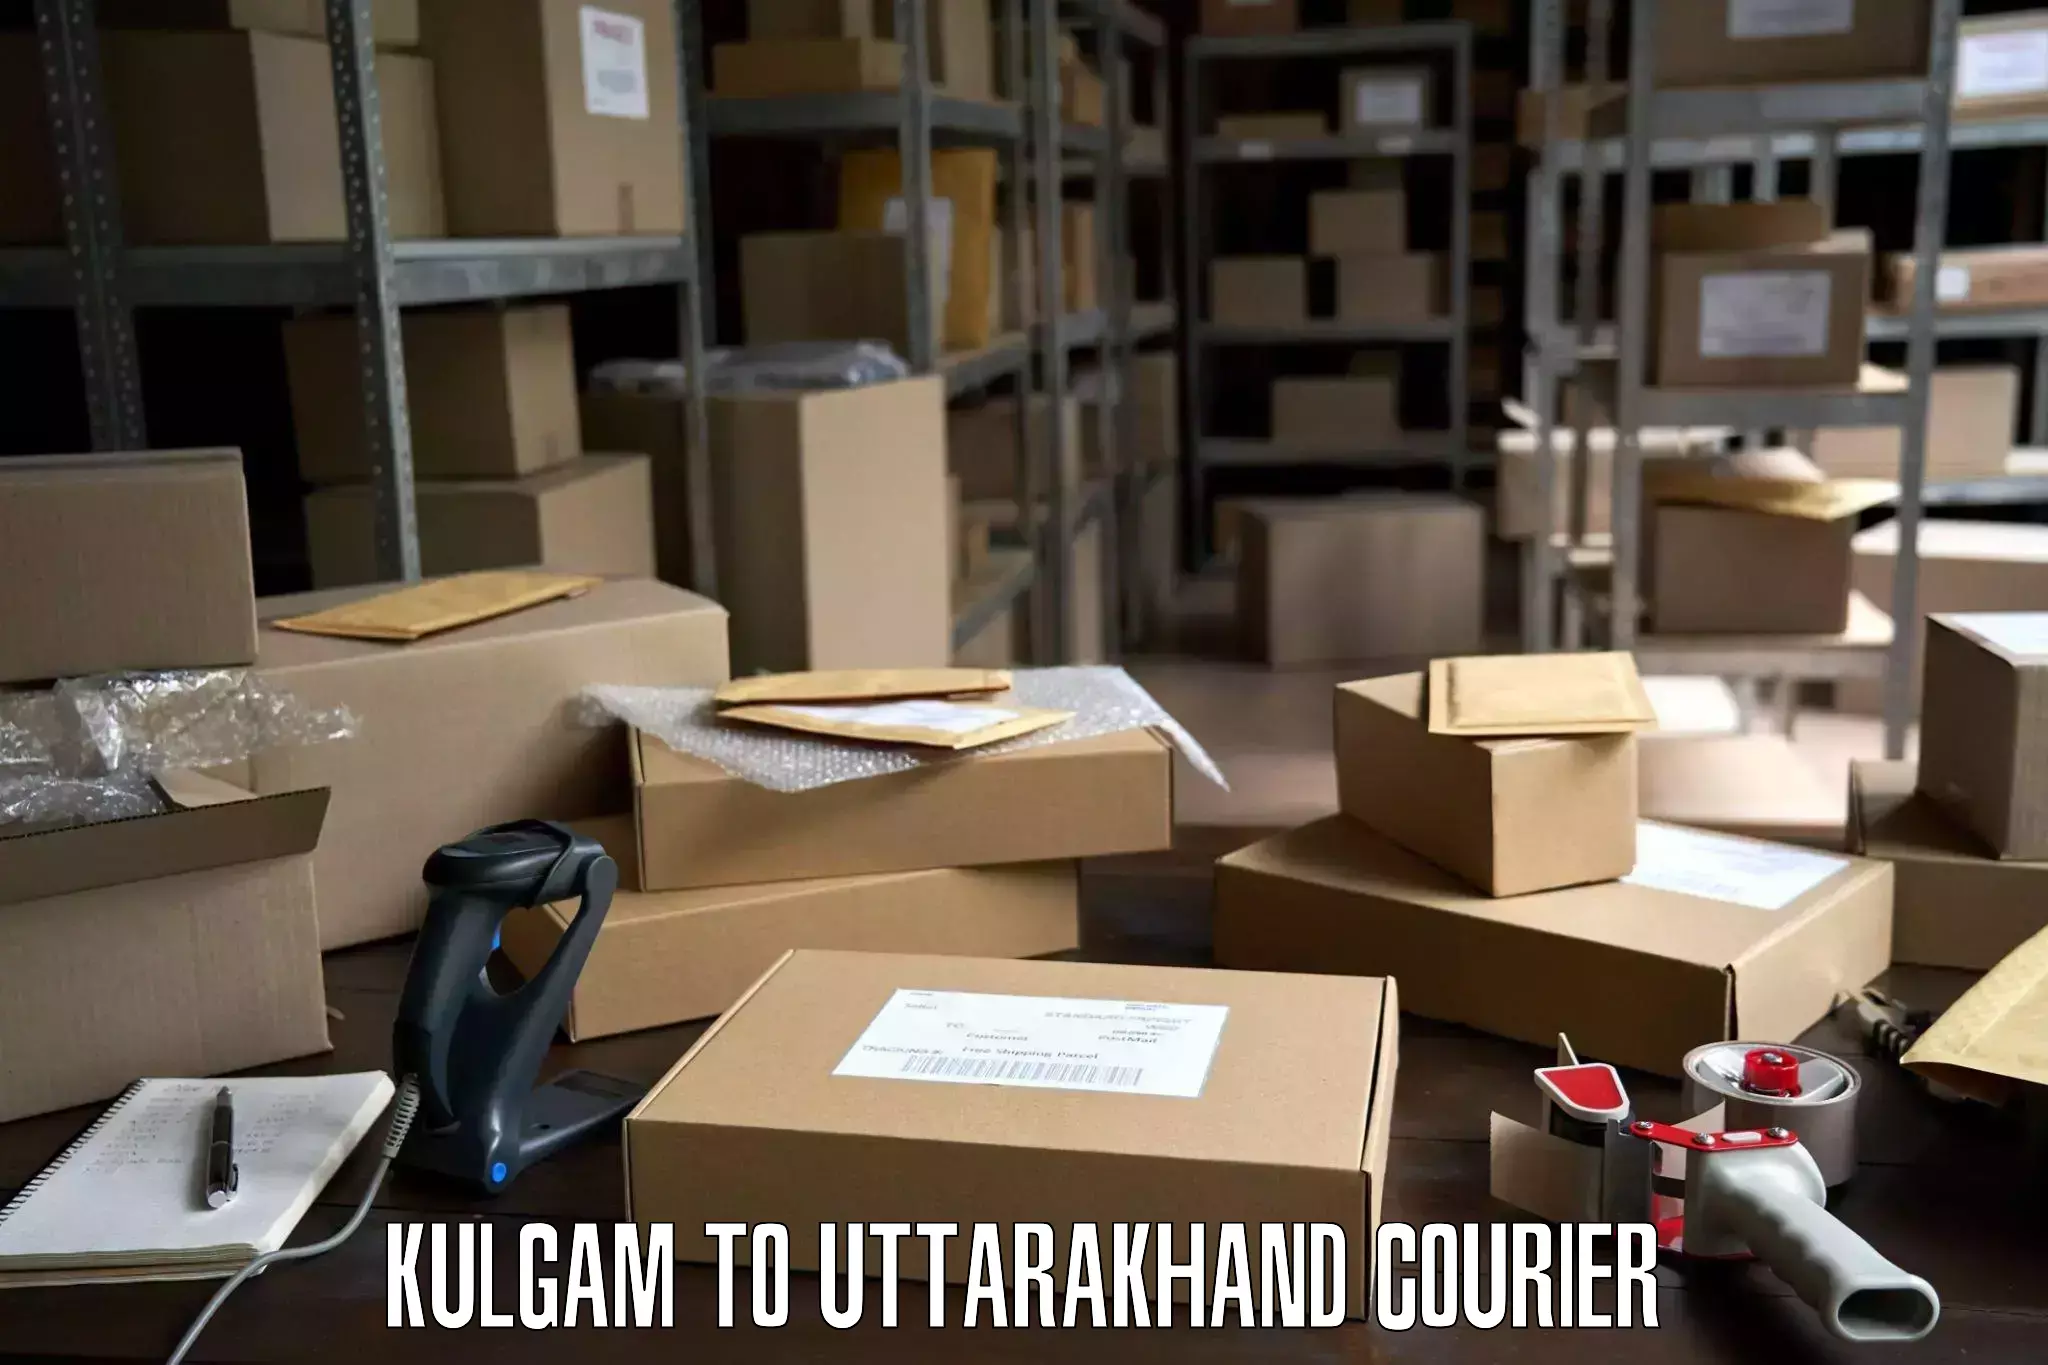 Furniture transport company Kulgam to Uttarakhand